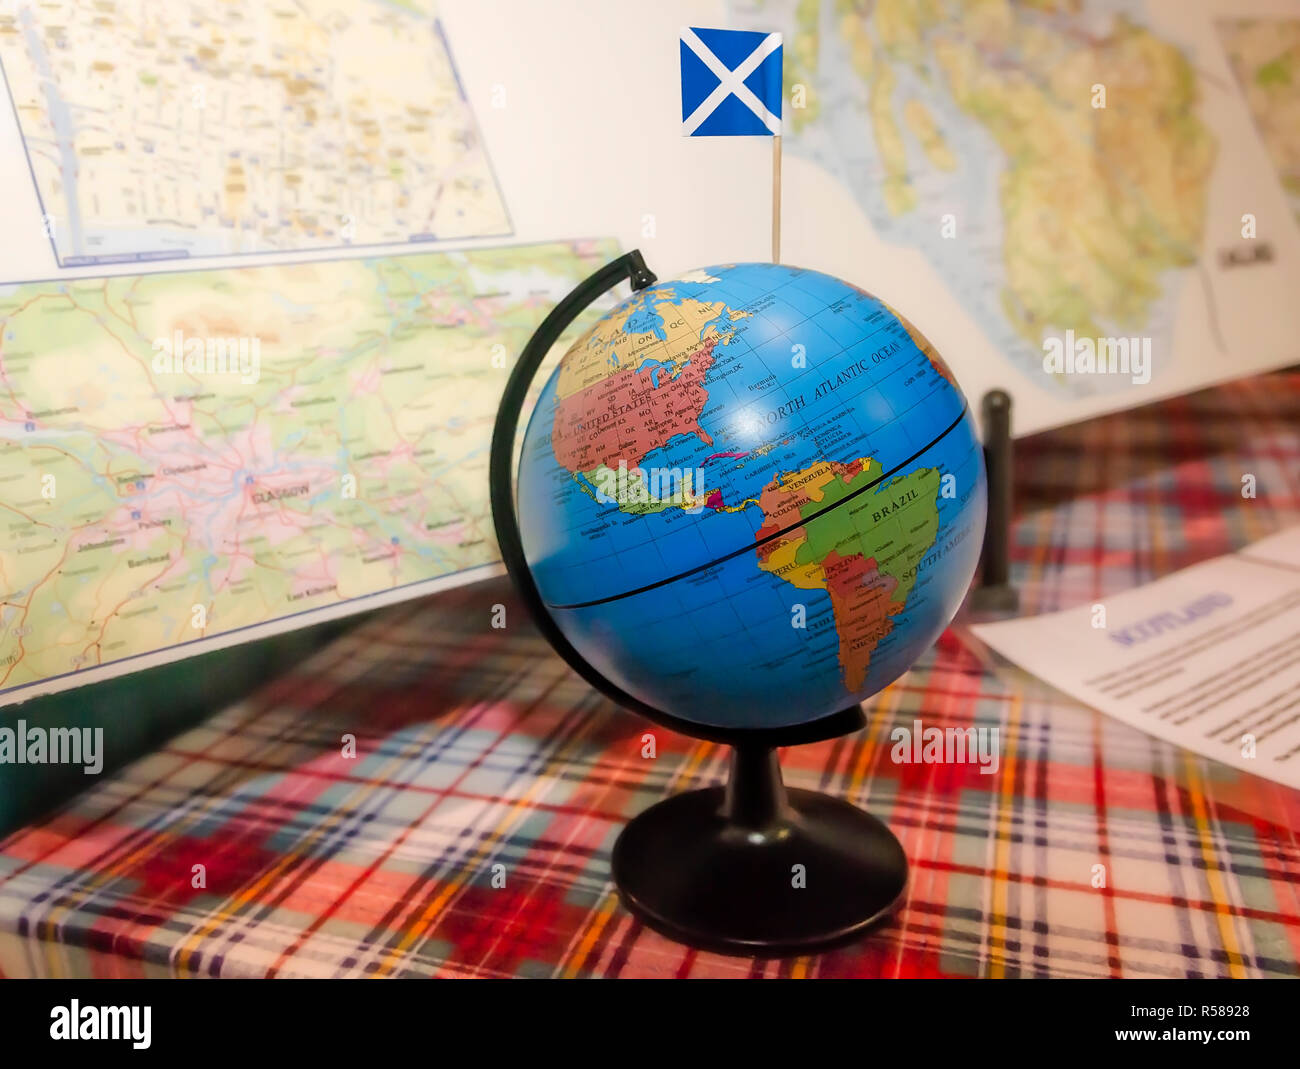 La bandiera della Scozia è inserita in un mappamondo e visualizzati con mappe presso la trentaquattresima Mobile annuale Festival Internazionale, nov. 17, 2018 in Mobile, Alabama. Foto Stock